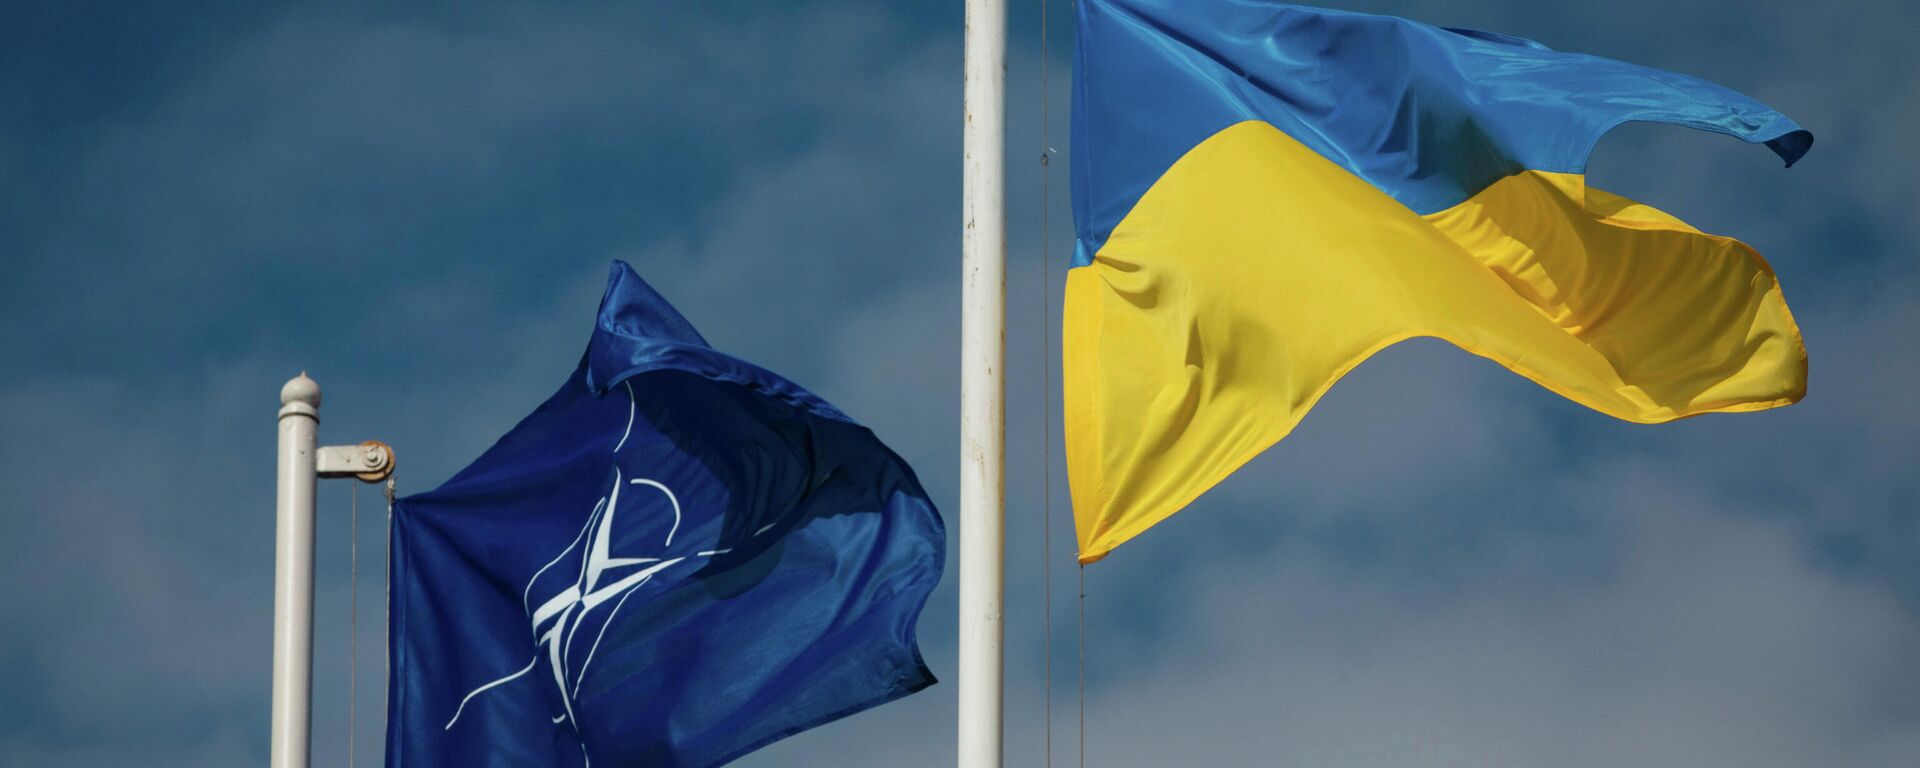 Национальный флаг Украины и флаг Организации Североатлантического договора (НАТО) - Sputnik Latvija, 1920, 09.03.2022